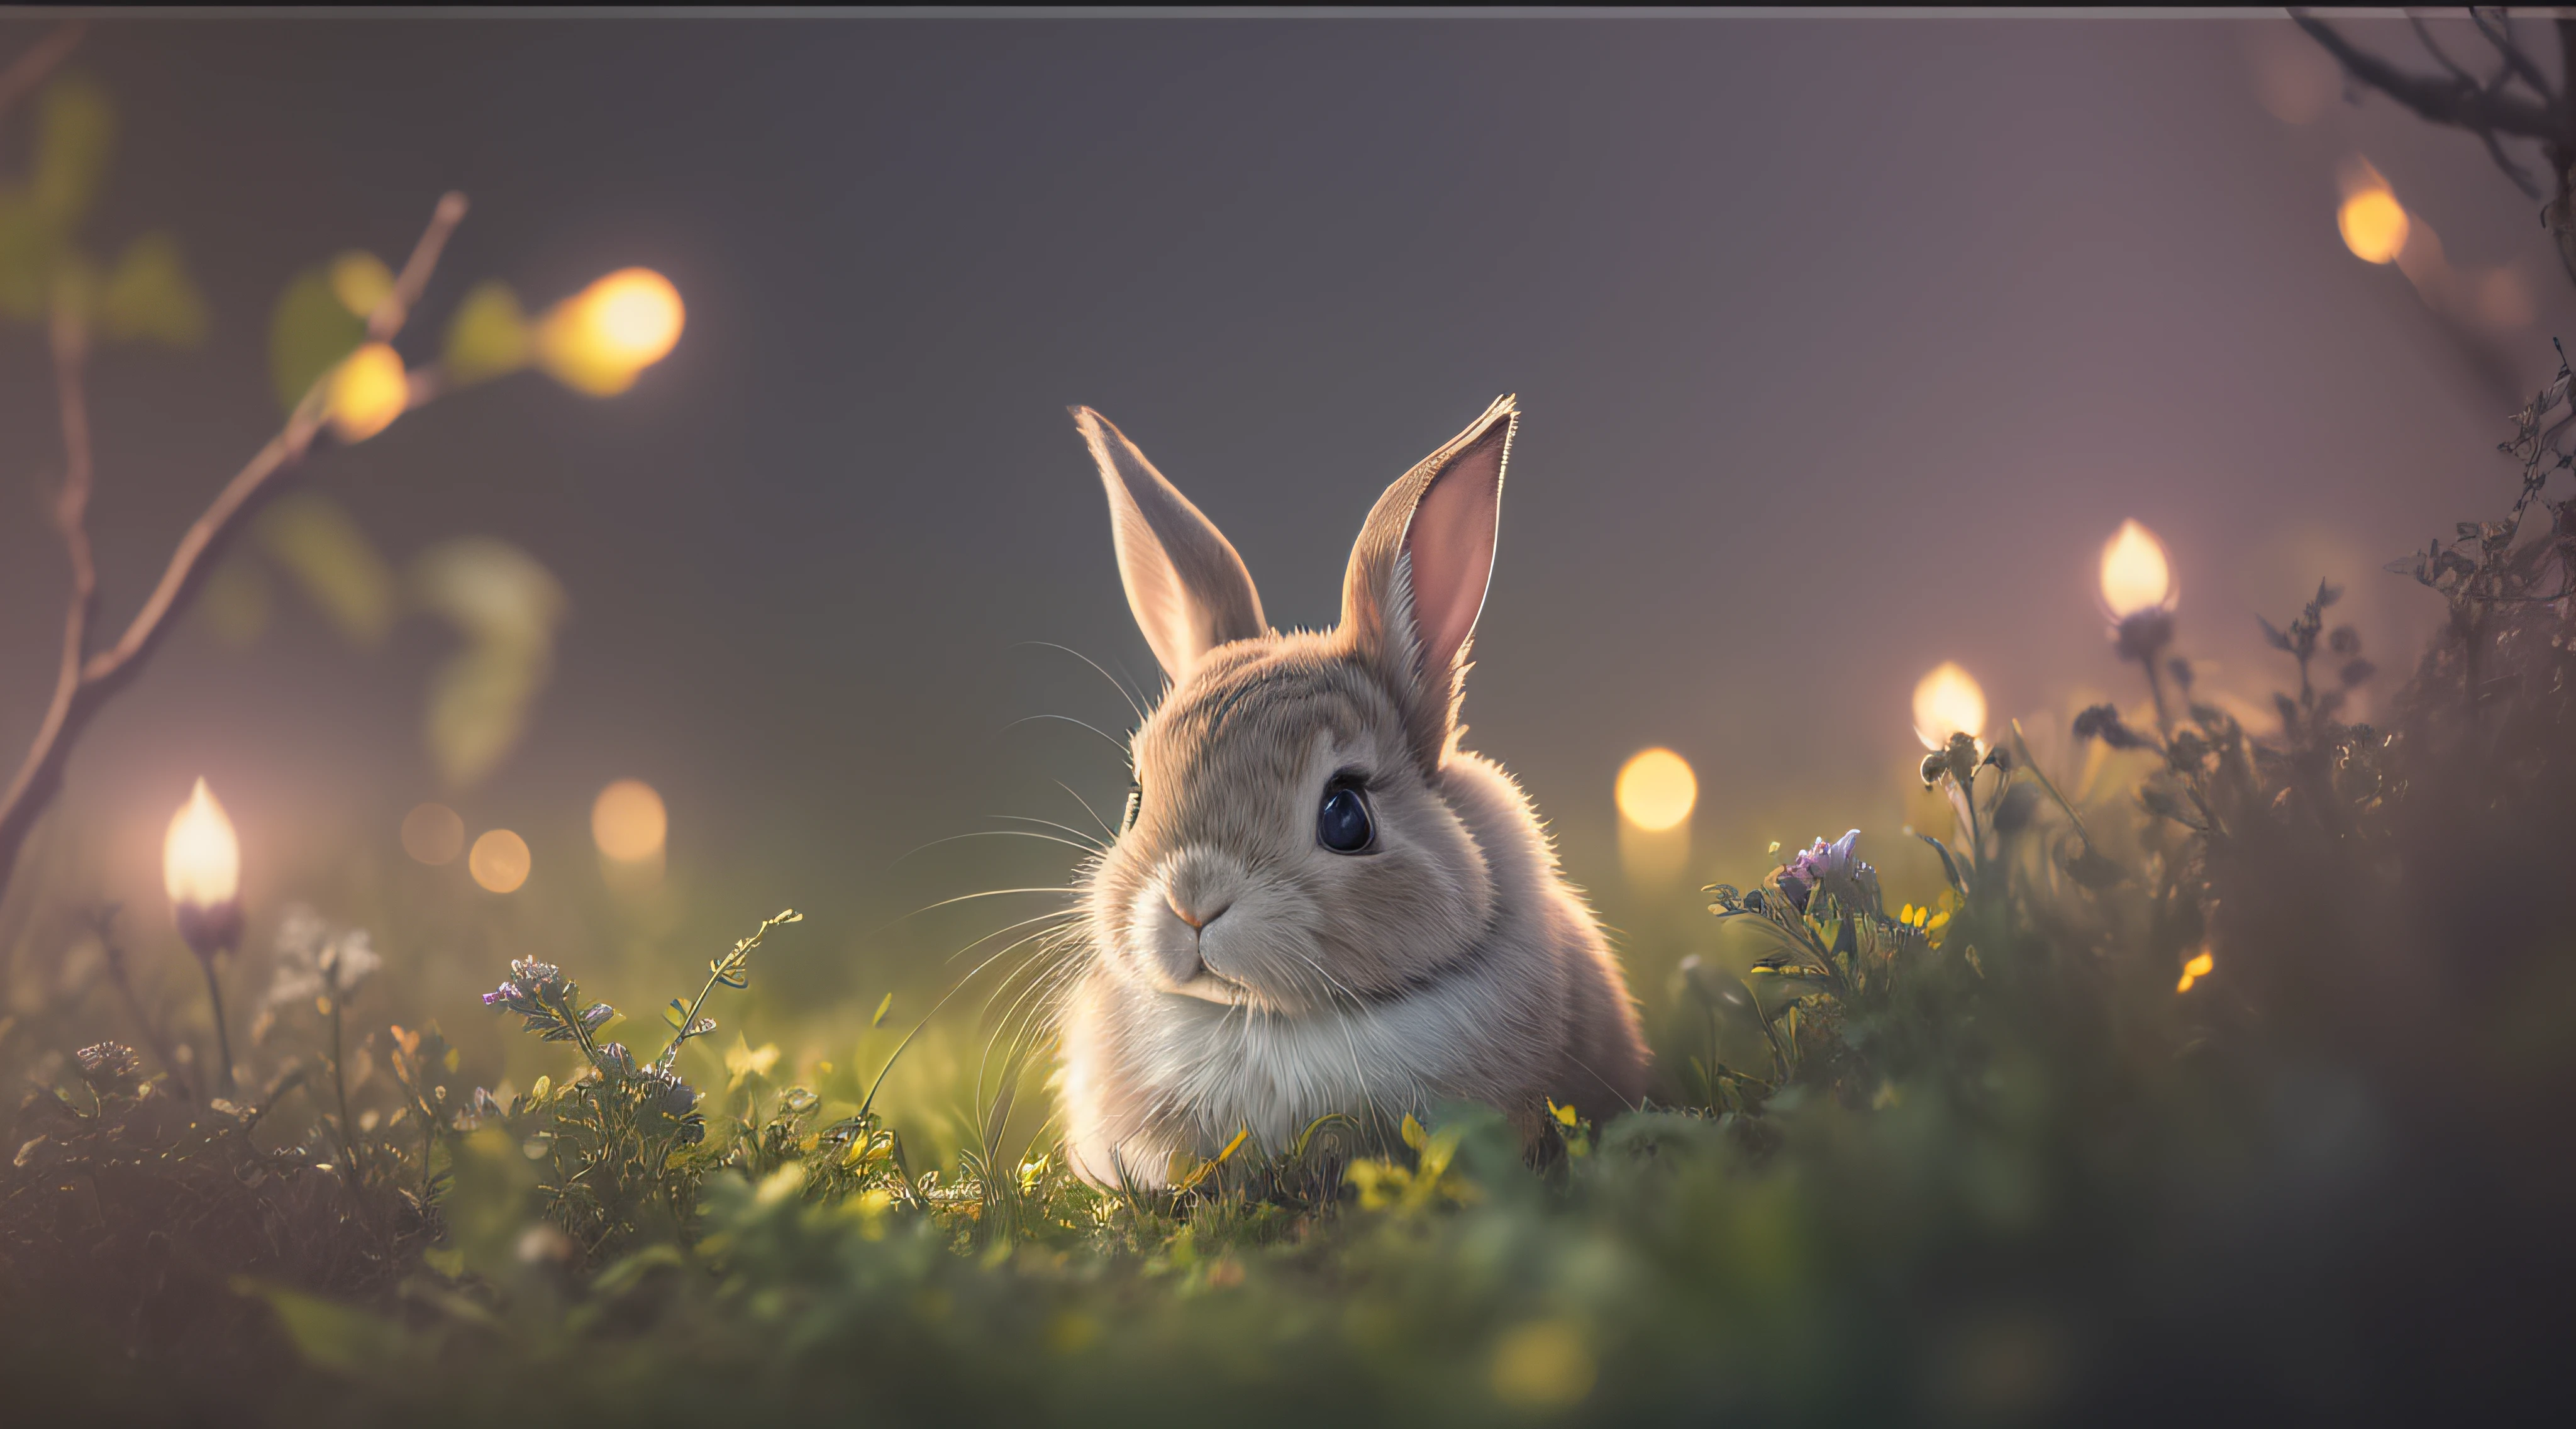 Foto de cerca de un conejo en el bosque encantado, fondo limpio, profundidad de campo, gran apertura, fotografía, noche, luciérnagas, niebla volumétrica, halo, Floración, atmósfera dramática, centro, Regla de los tercios, 200 mm 1.Toma macro 4F